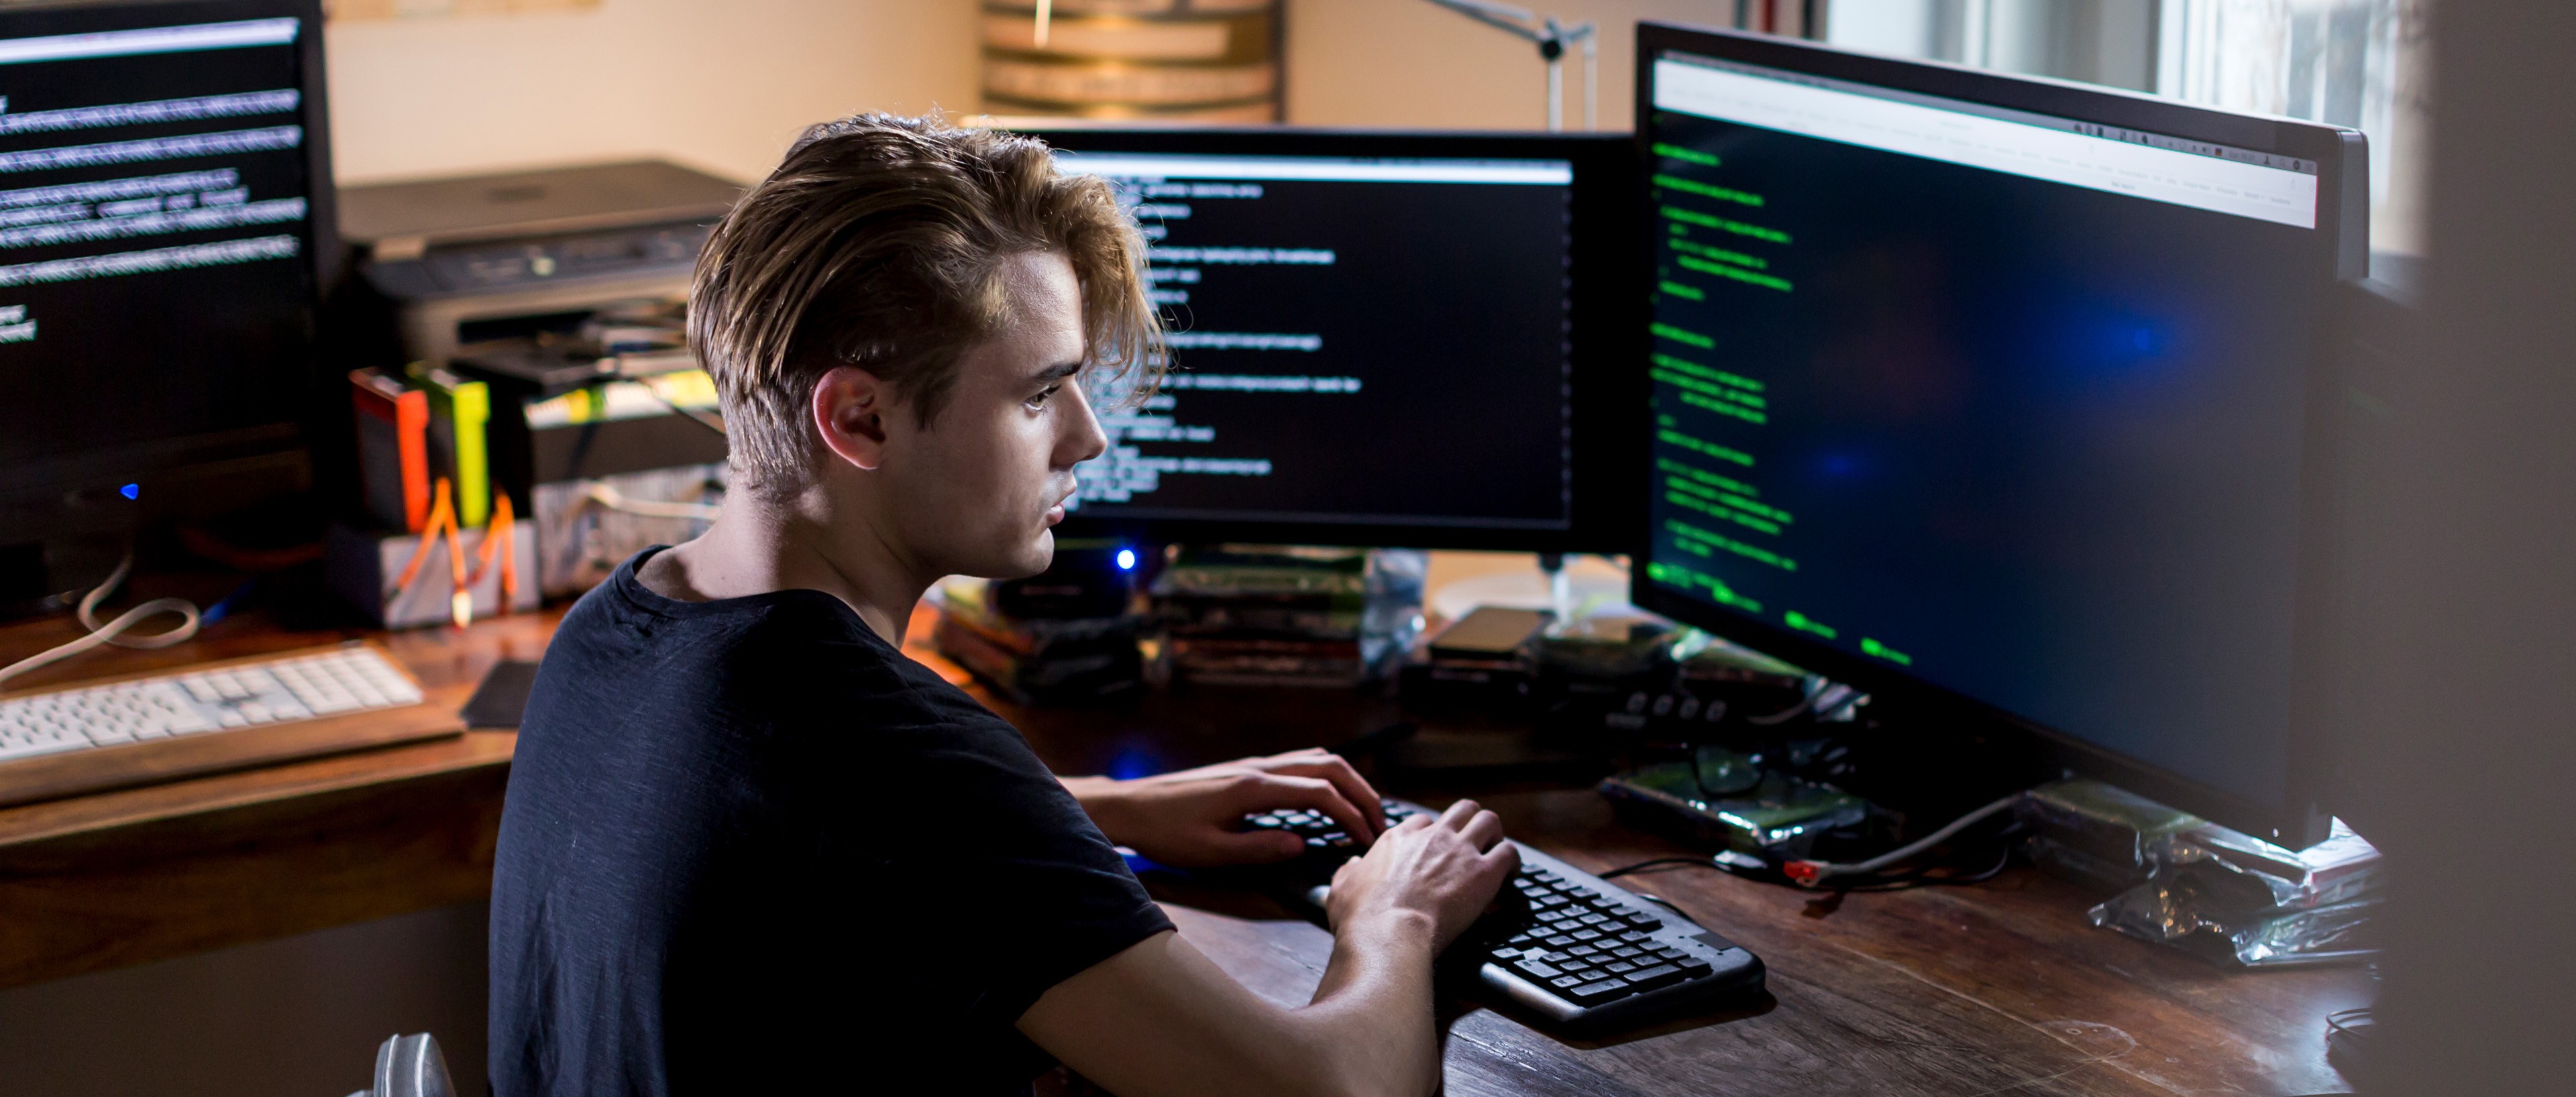 Estudiante está escribiendo y programando con su ordenador en casa